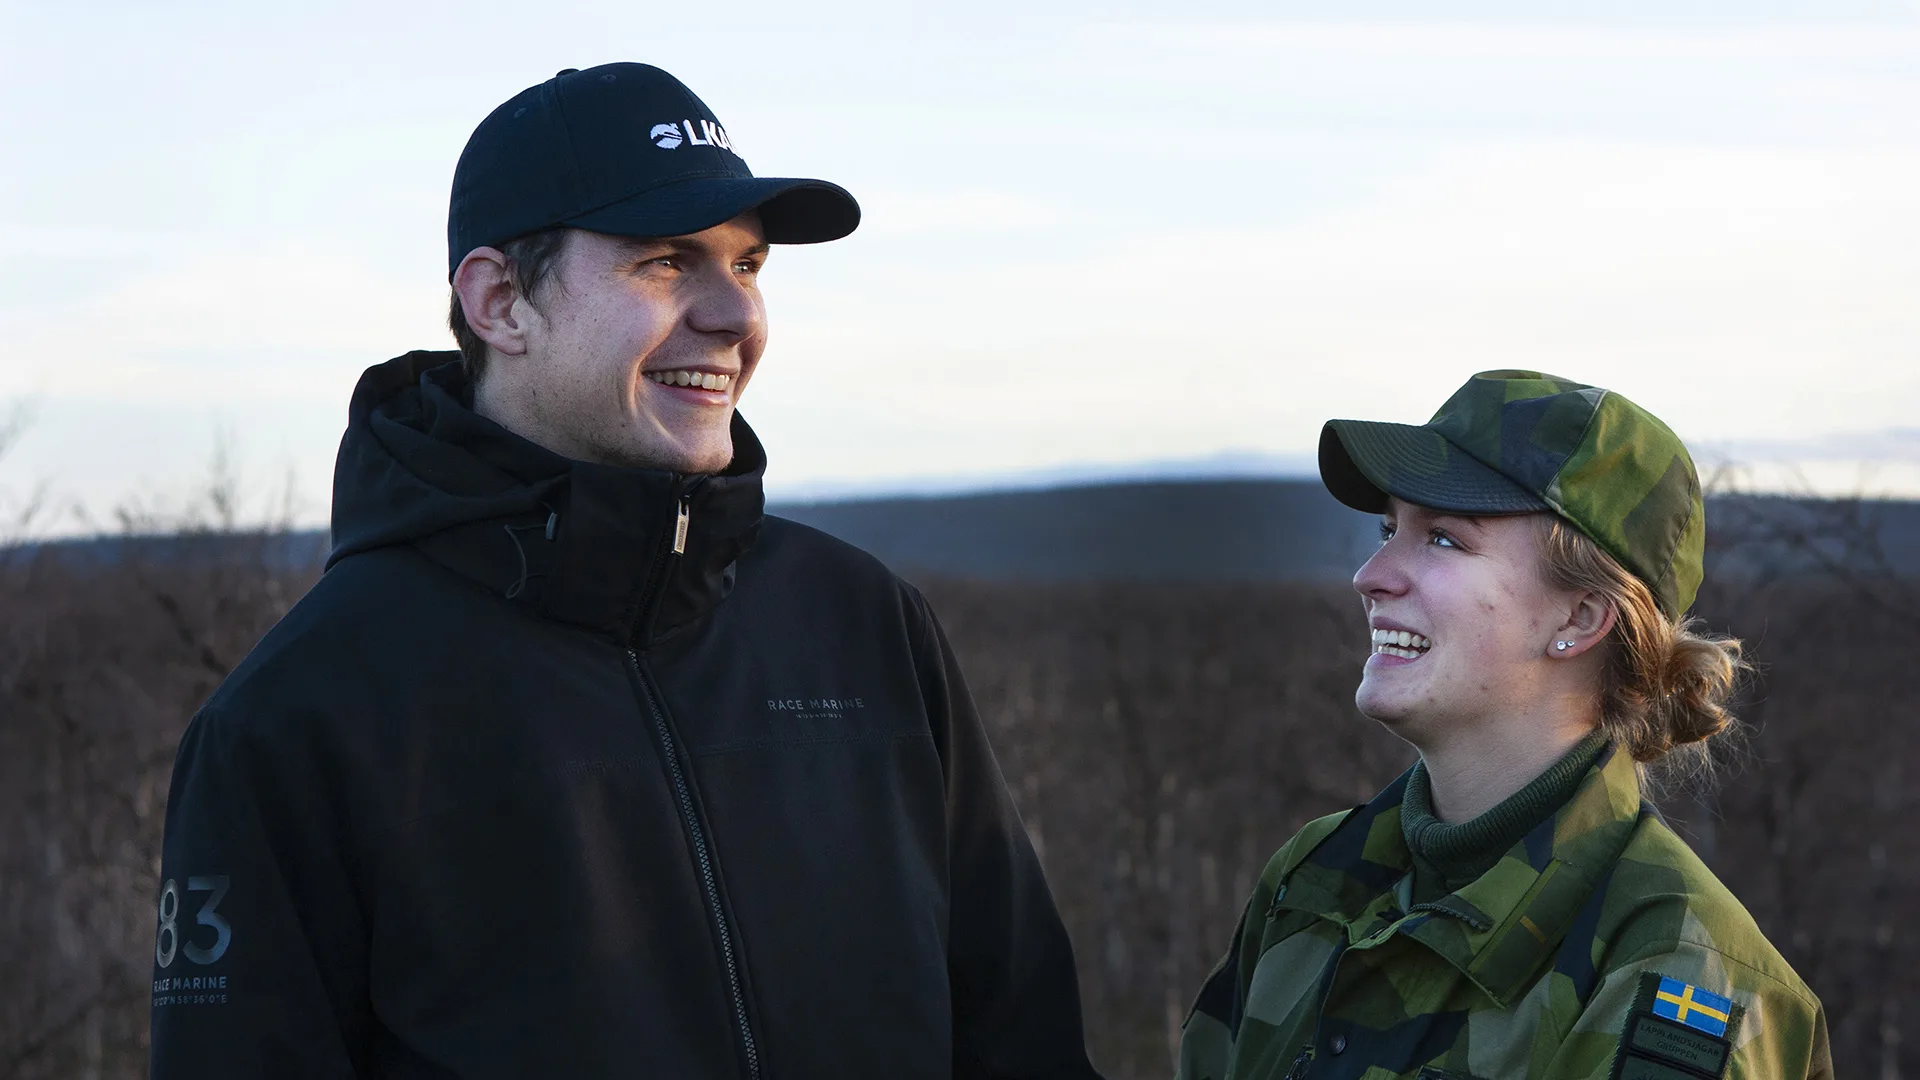 Två personer utomhus, varav en i försvarsmaktens uniform.